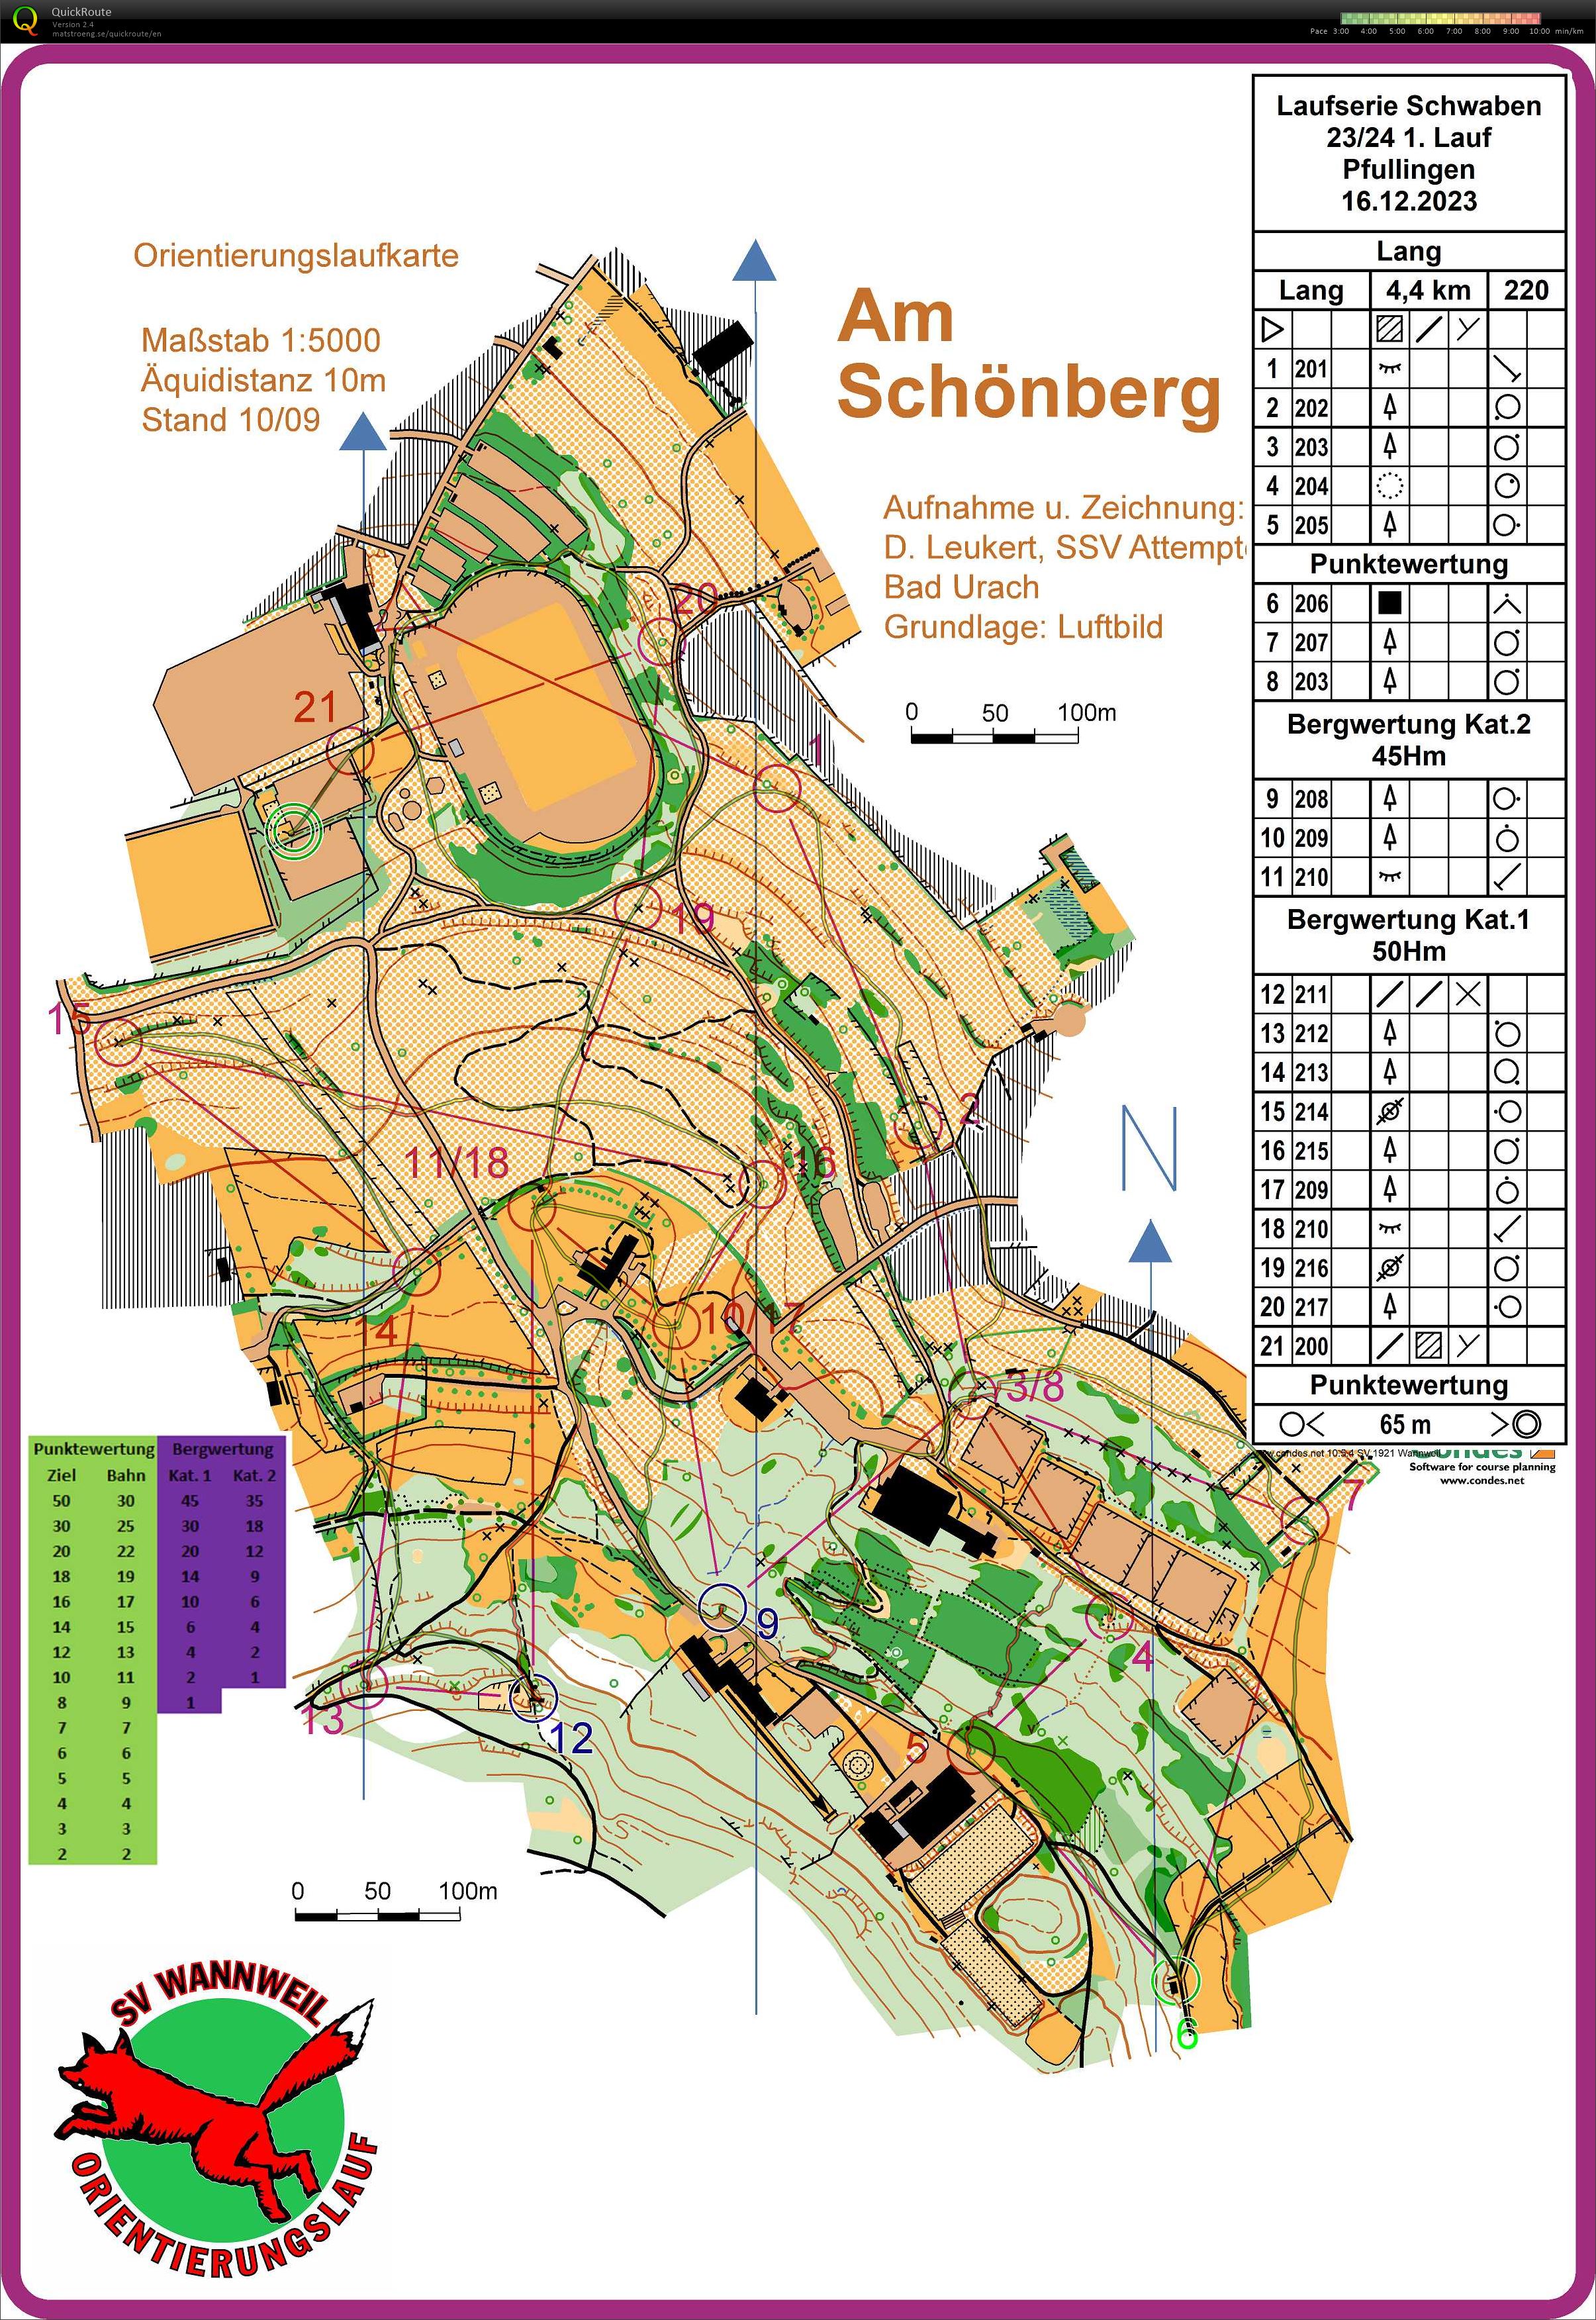 Laufserie Schwaben 23/24 1. Round Pfullingen (2023-12-16)